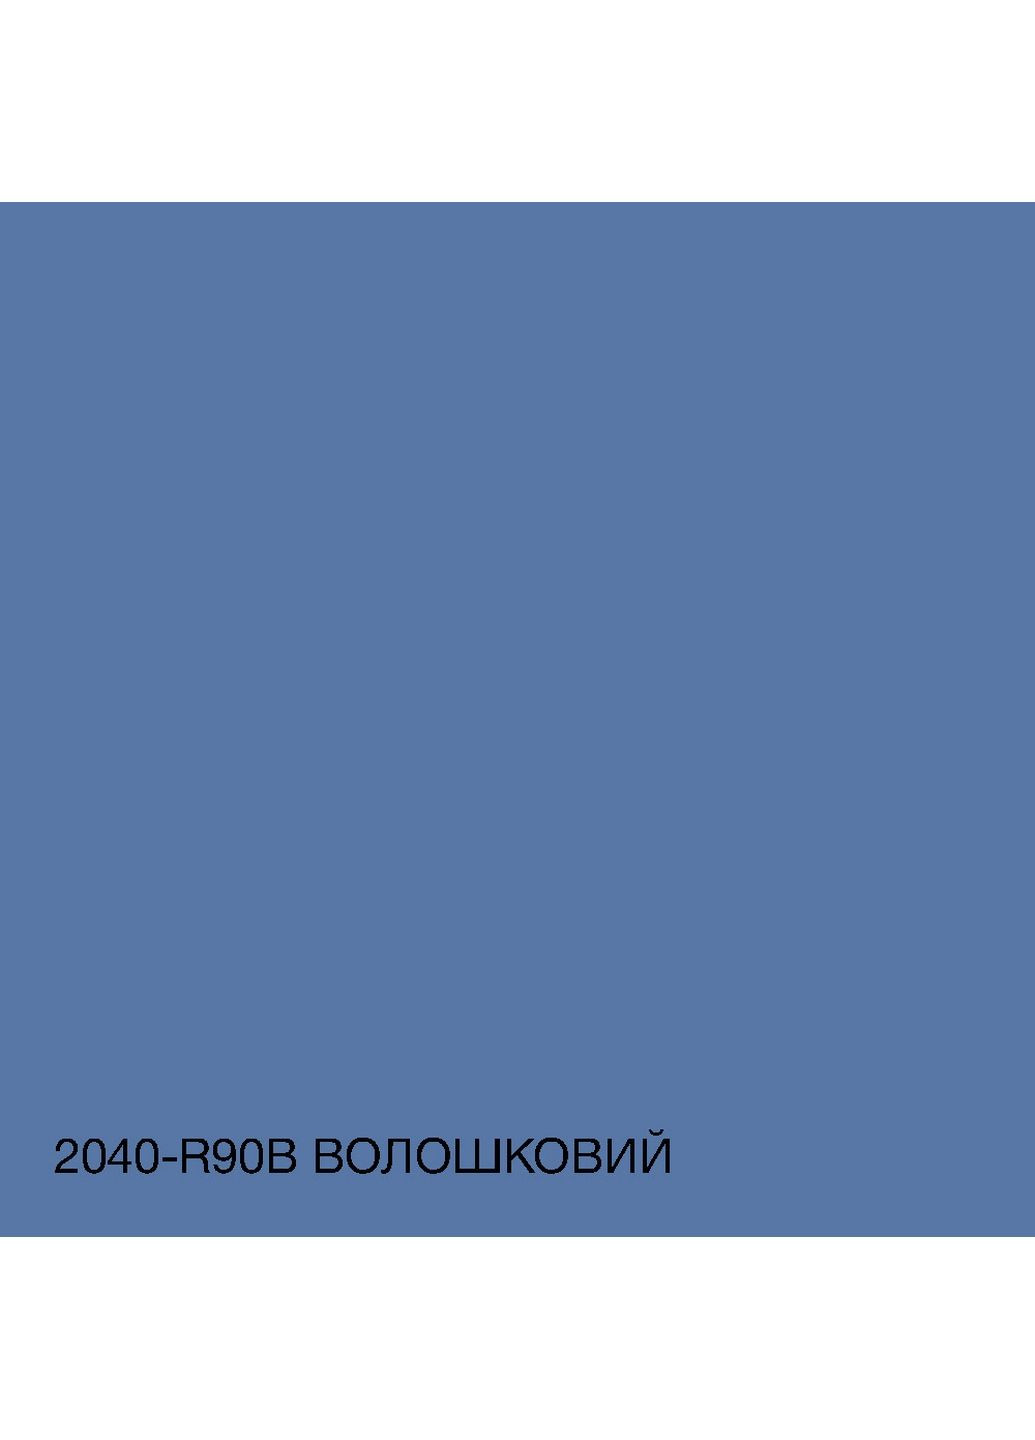 Фасадна фарба акрил-латексна 2040-R90B 5 л SkyLine (289367684)